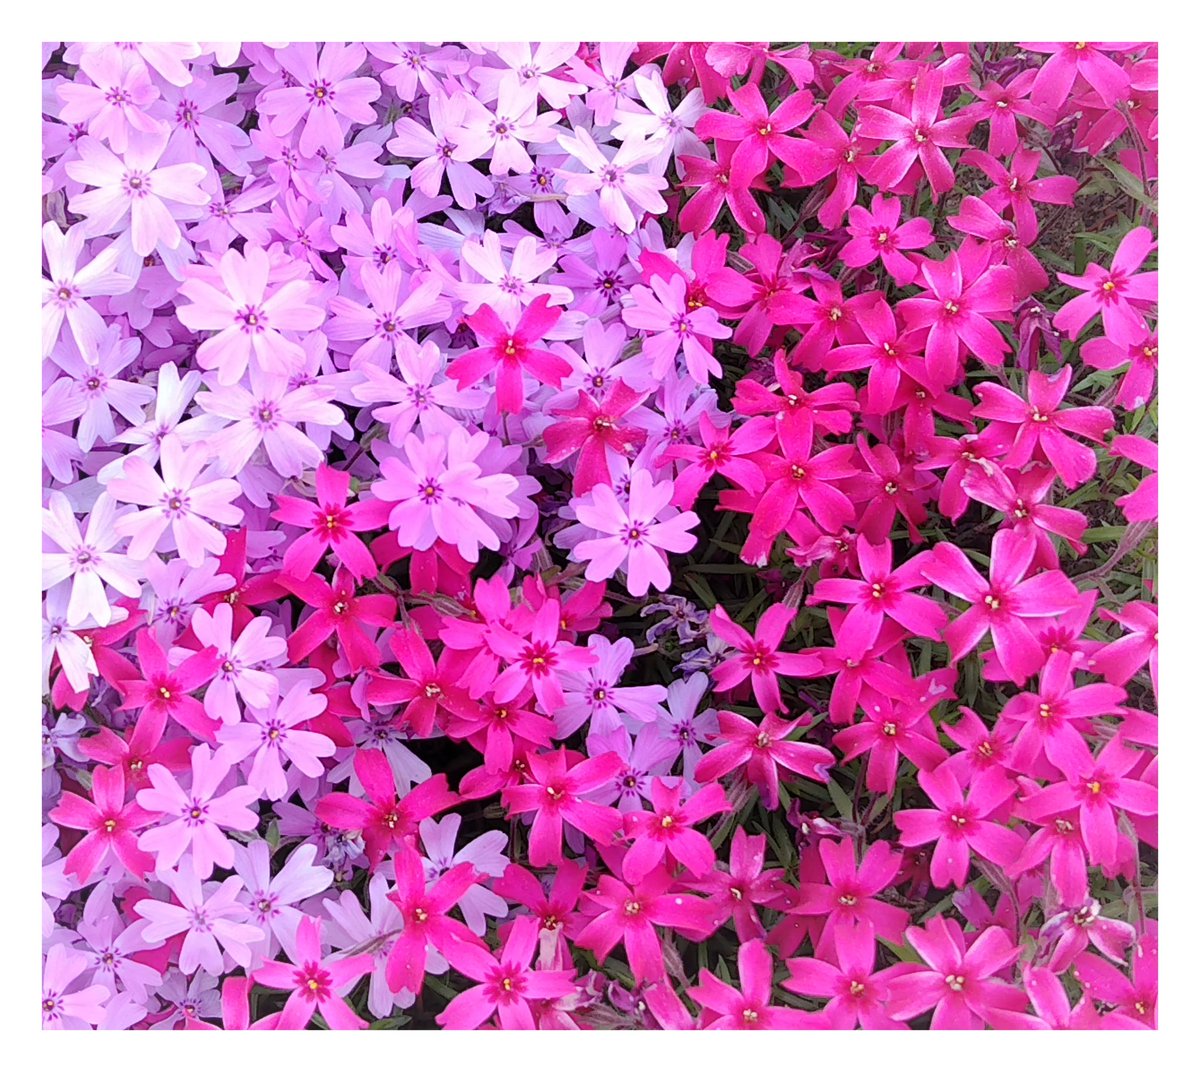 ☆おはようございます
☆5月14日
☆火曜日
#写真好きな人と繫がりたい 
#写真撮ってる人と繋がりたい 
#写真で伝える私の世界 
☆花が好き
#花が好きな人と繋がりたい 
#TLを花でいっぱいにしよう 
#キリトリノセカイ